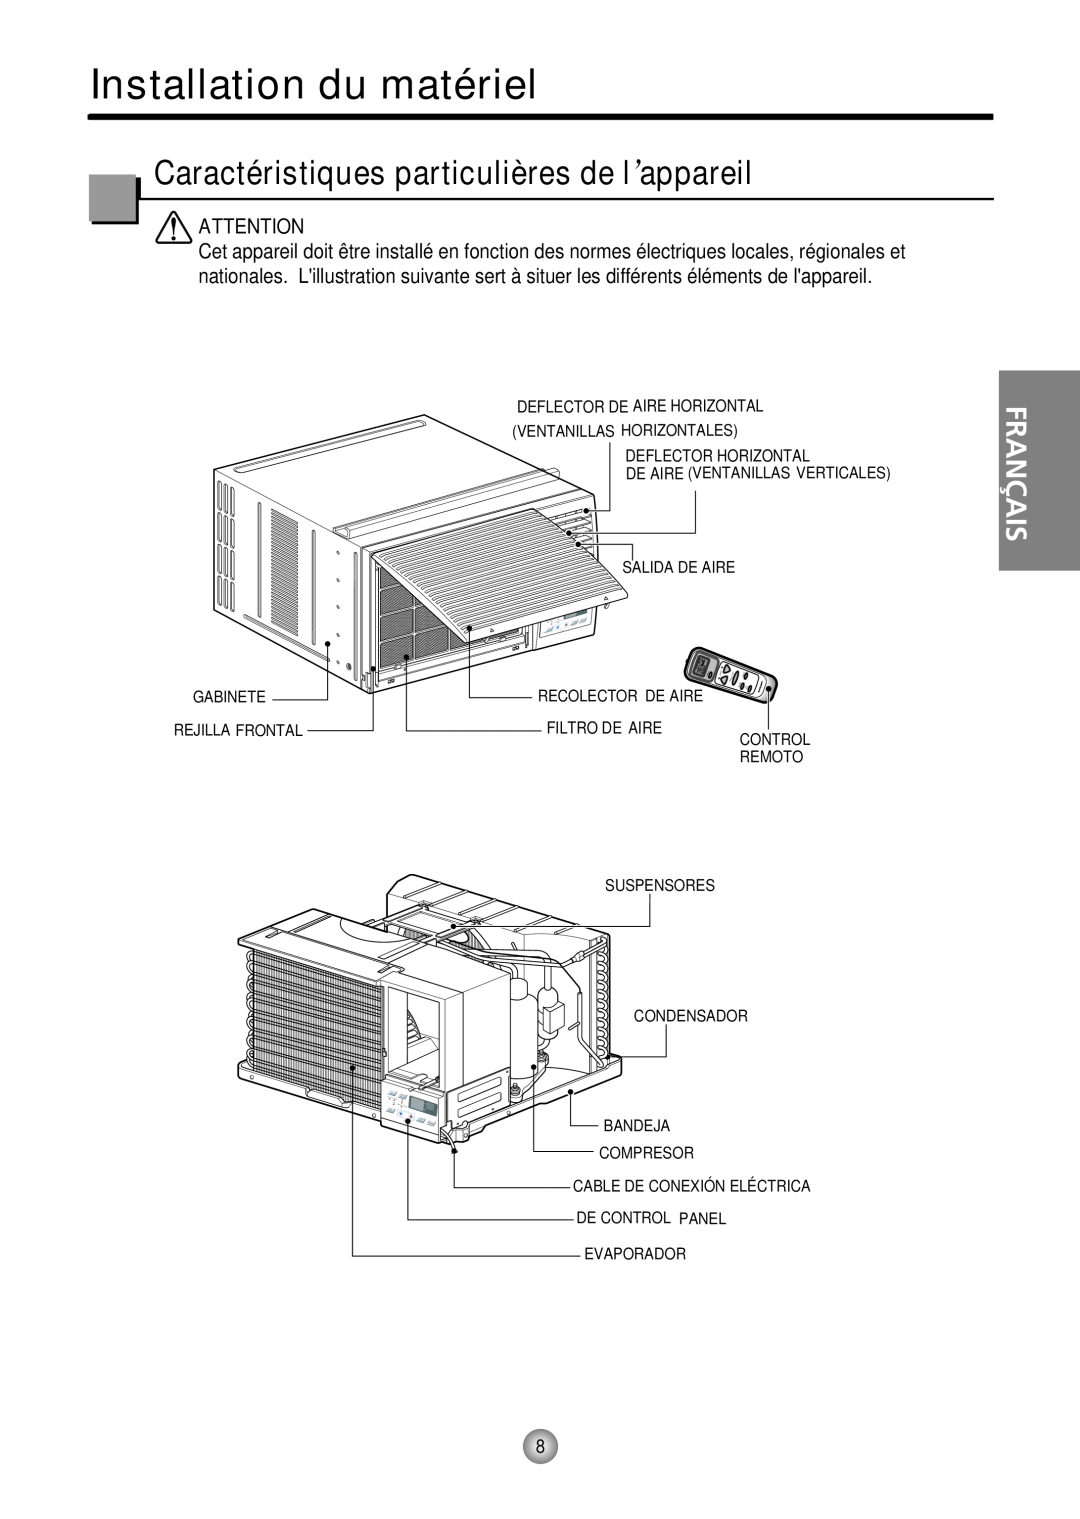 Friedrich CP10 Installation du matériel, Caractéristiques particulières de l’appareil, Français, Ventanillas Horizontales 